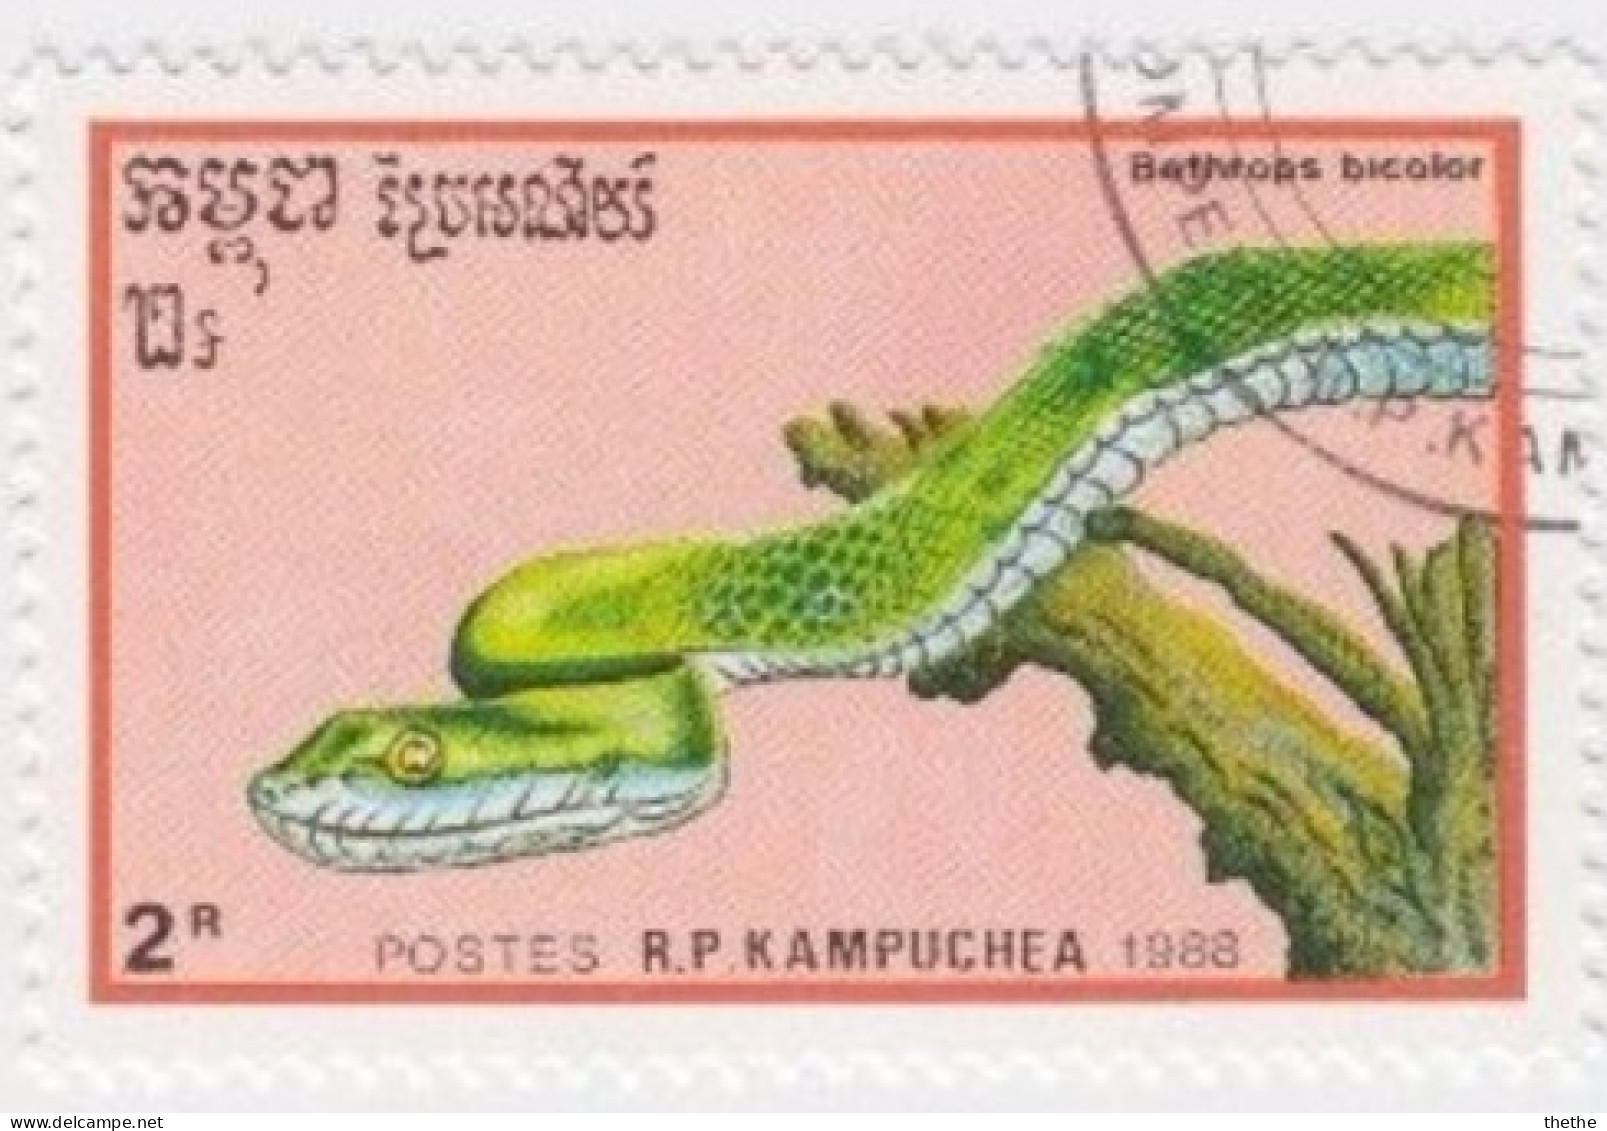 KAMPUCHEA  -  Serpent : Bothrops Bicolor - Serpientes